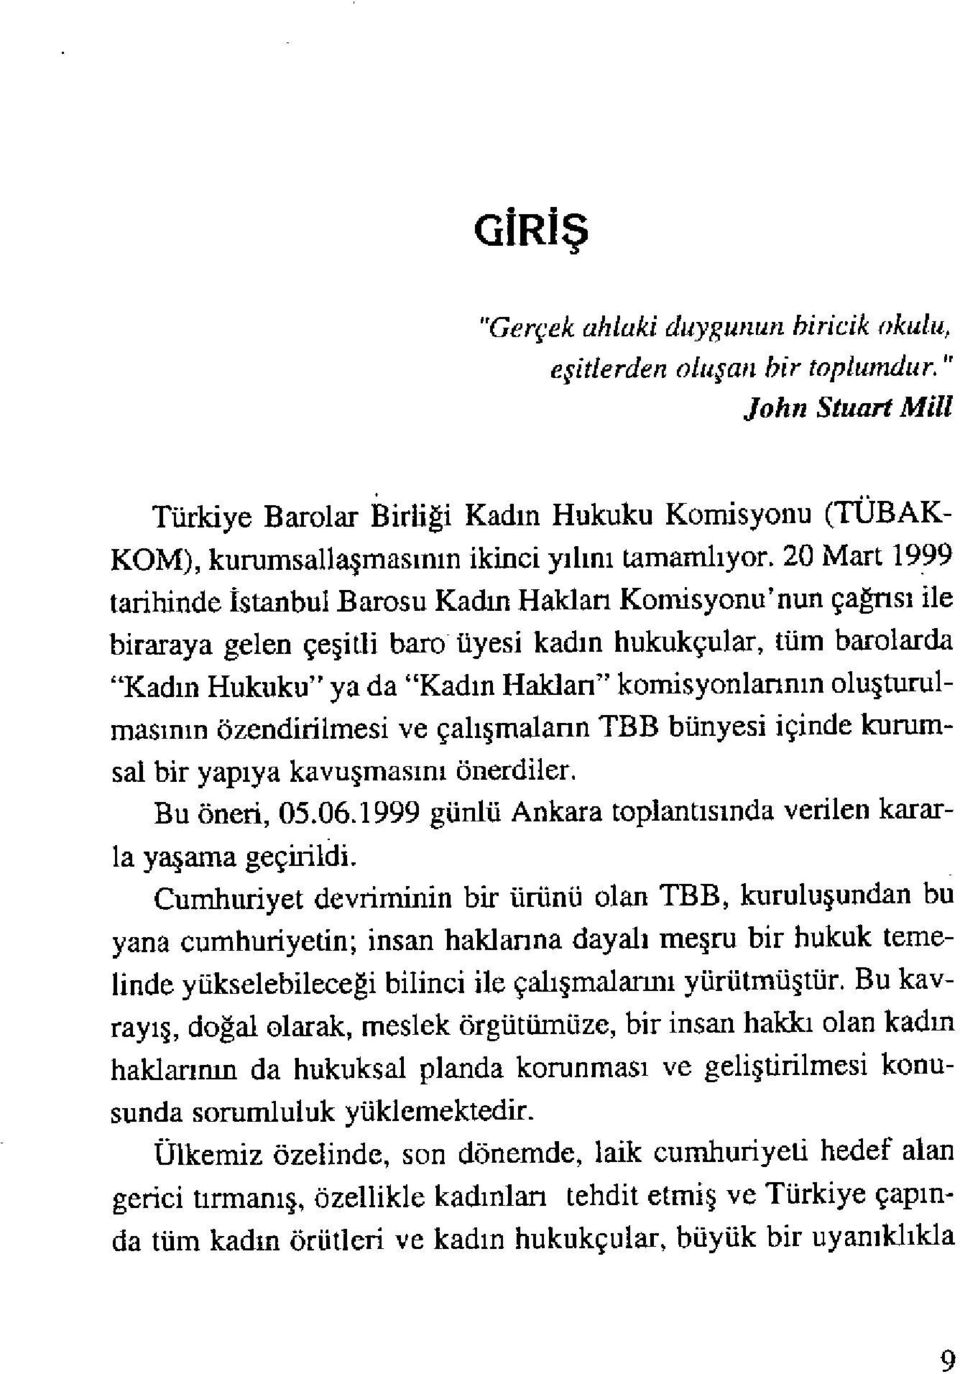 20 Mart 1999 tarihinde İstanbul Barosu Kad ın Hakları Komisyonu'nun çağrısı ile biraraya gelen çe şitli baro üyesi kad ın hukukçular, tüm barolarda "Kadın Hukuku" ya da "Kad ın Hakları" komisyonlar